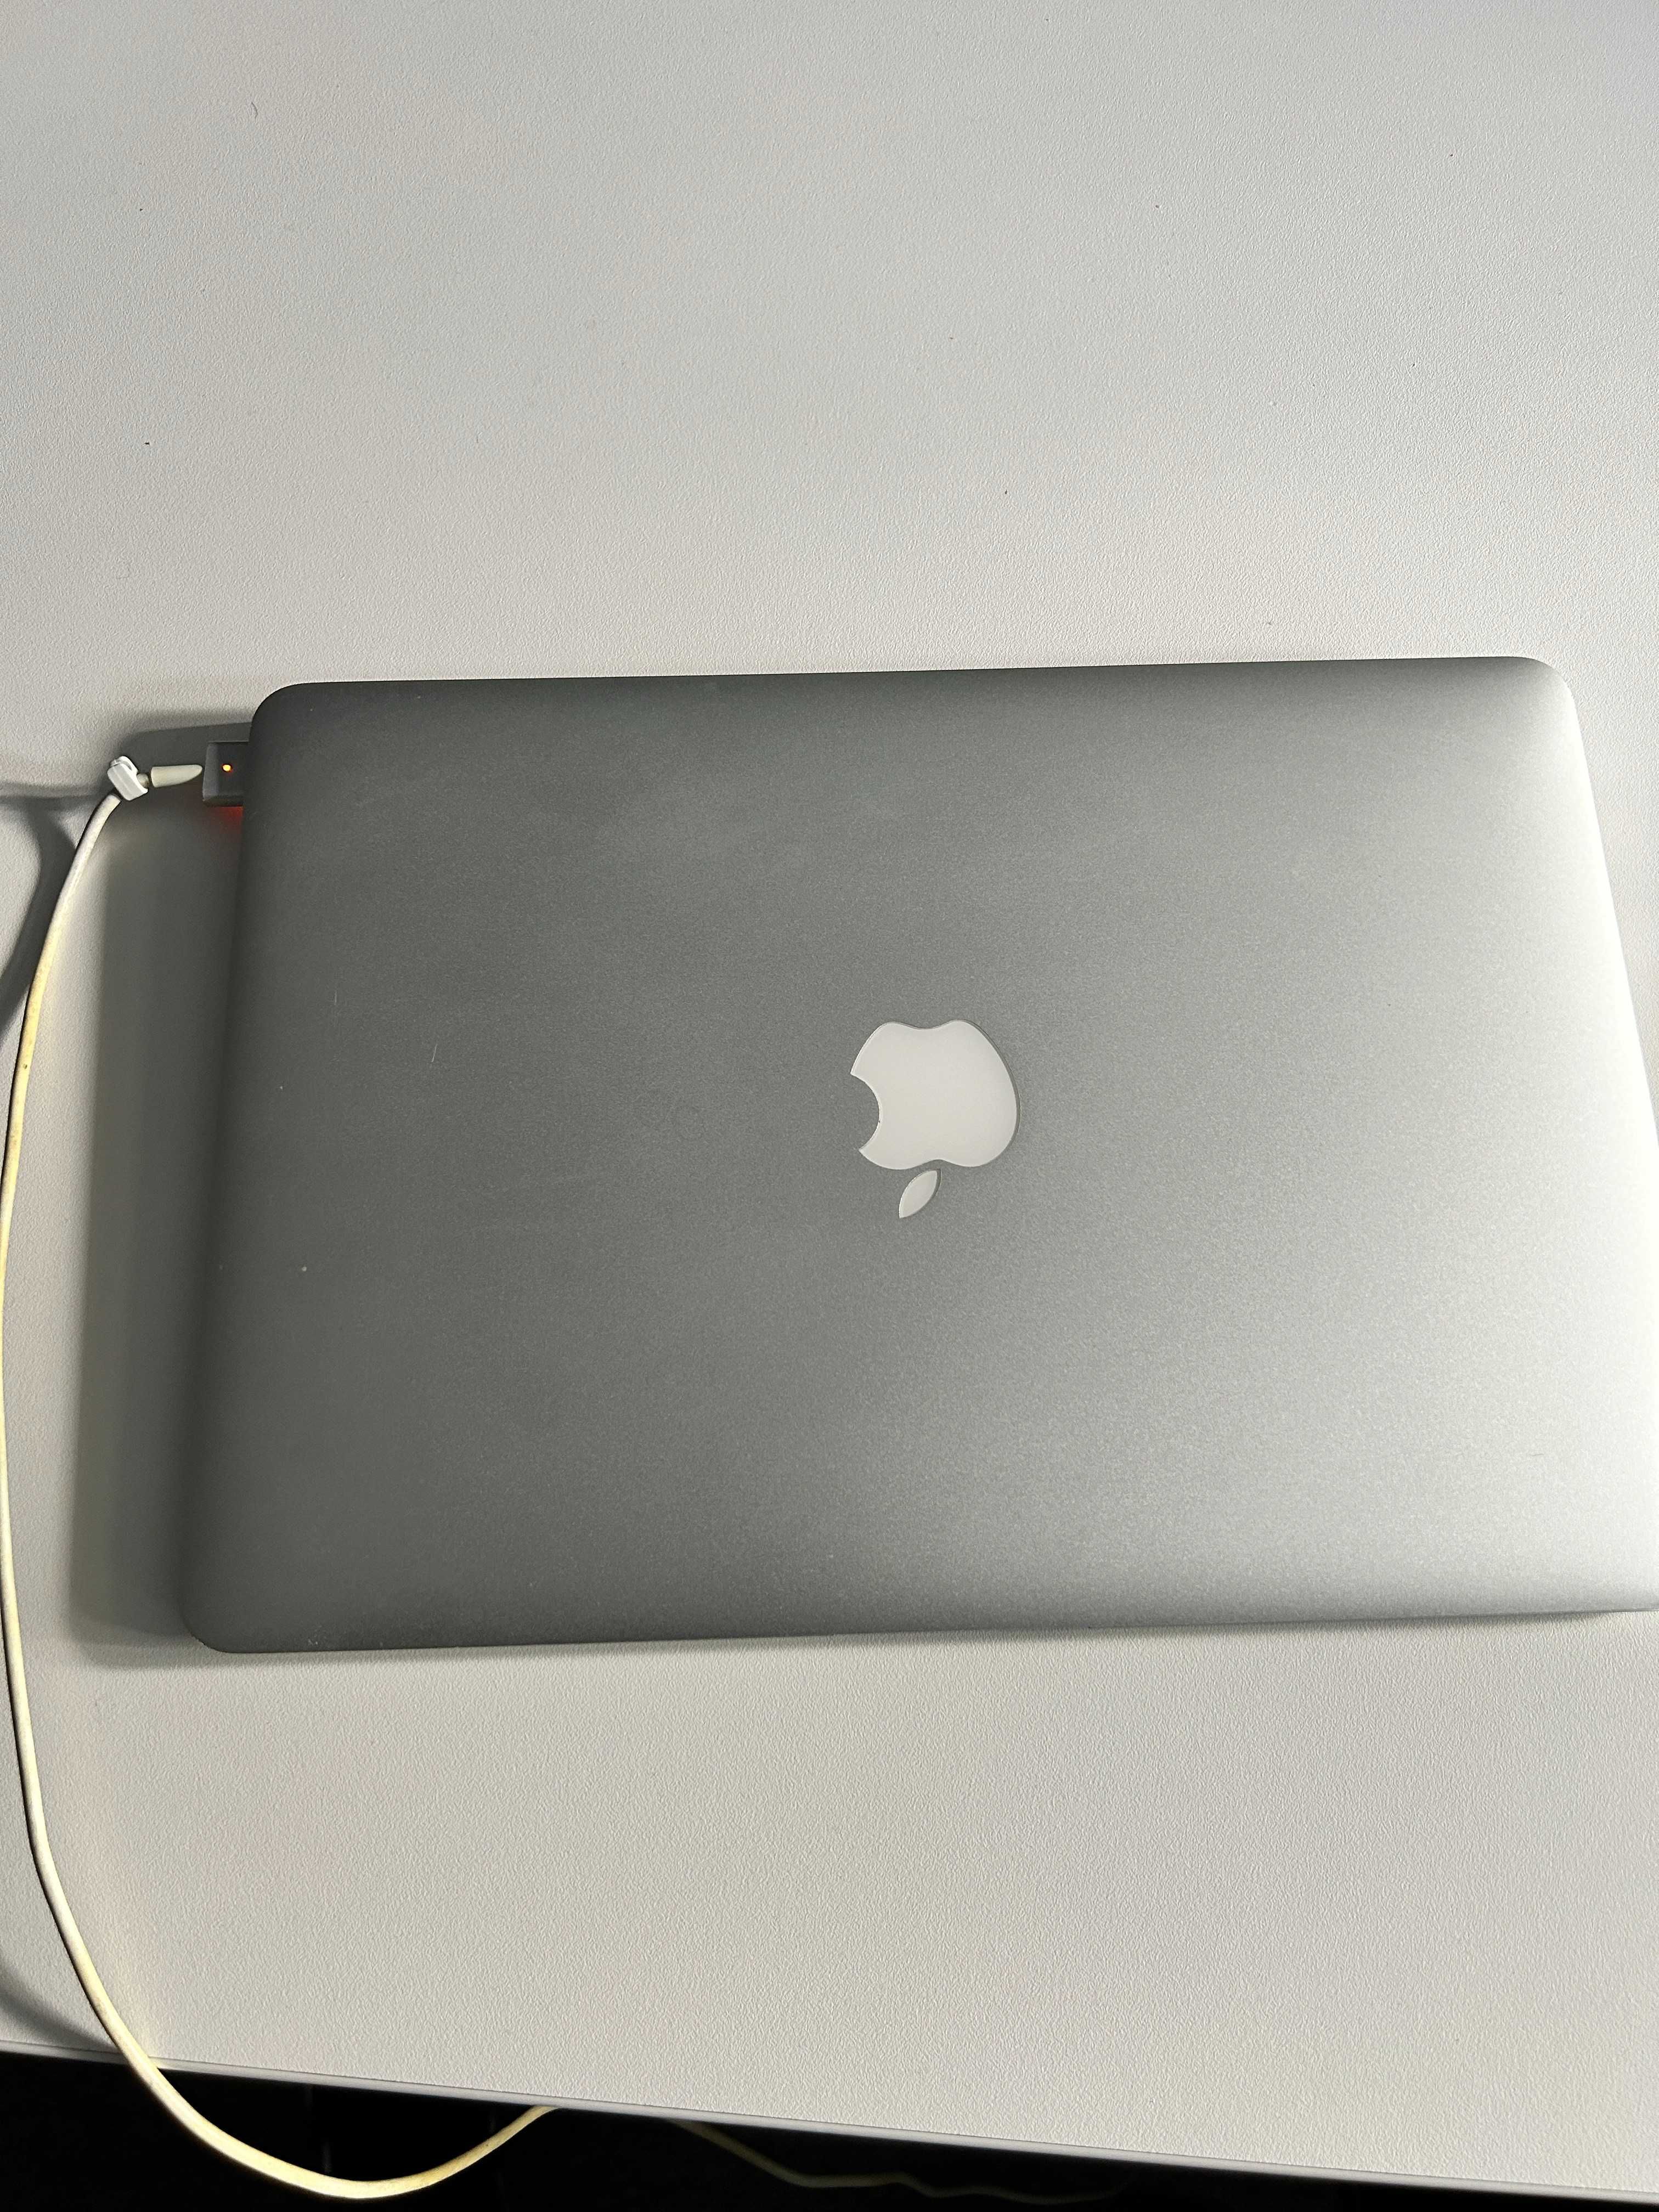 Apple MacBook intel core i5, 8gb ram, 256gb ssd